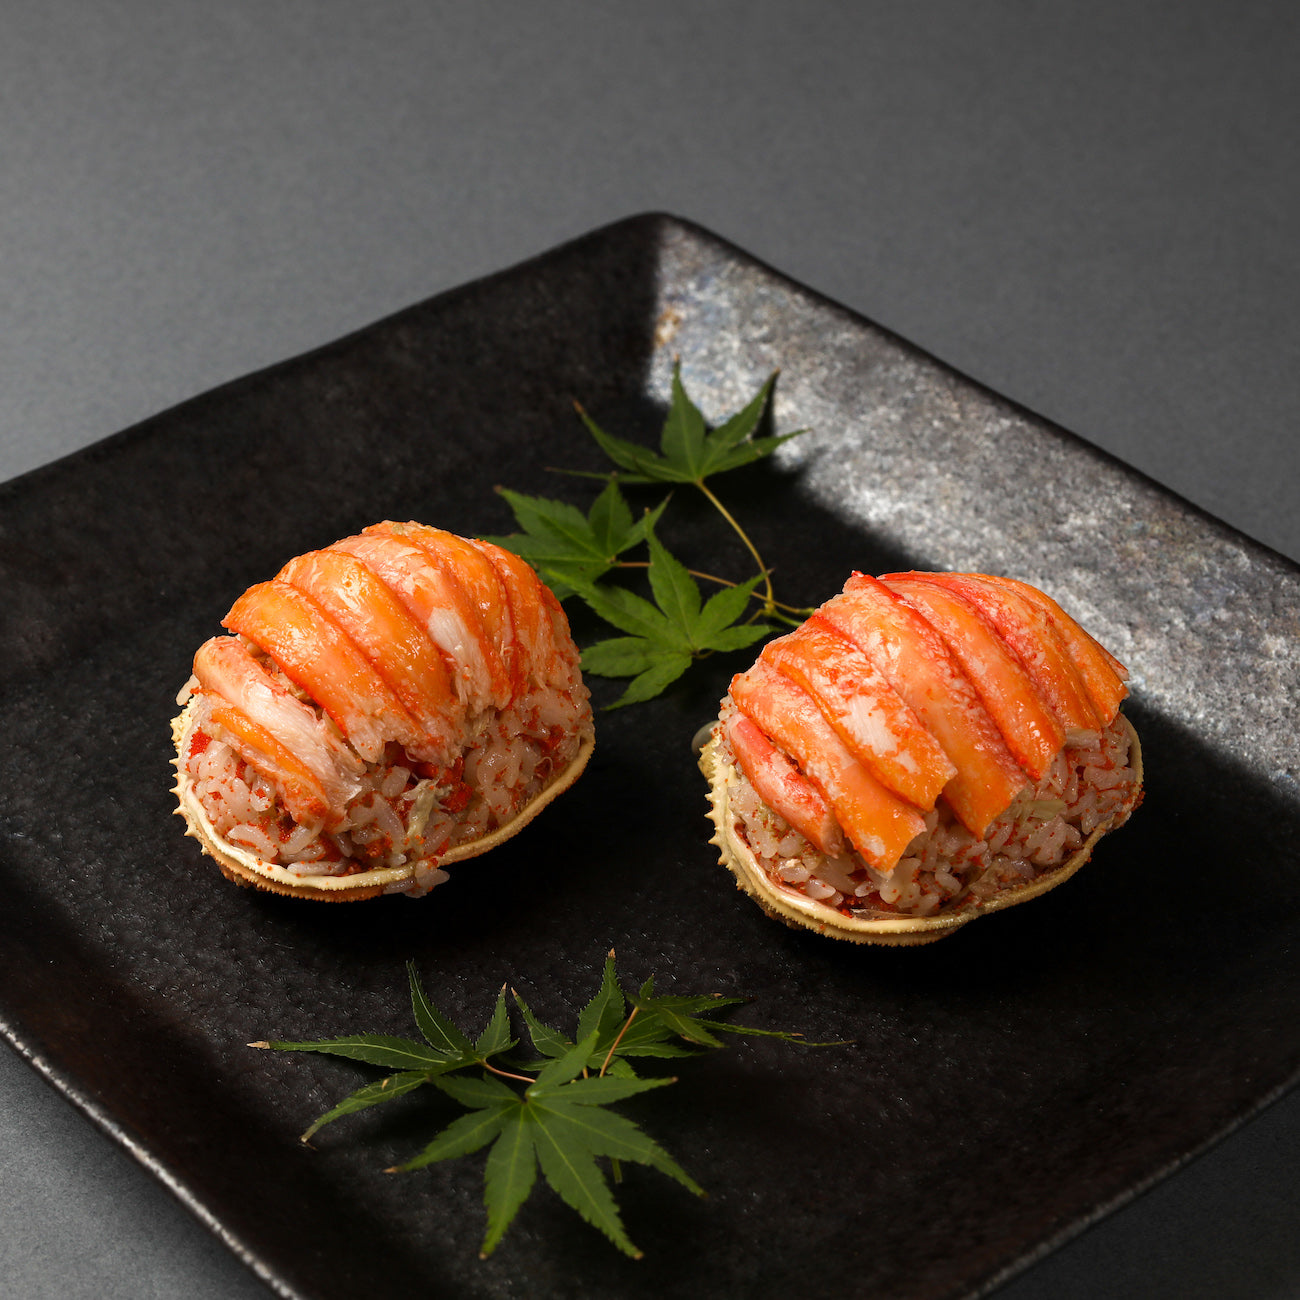 香箱ガニのカニ面寿司（3個）とわっぱチラシセット